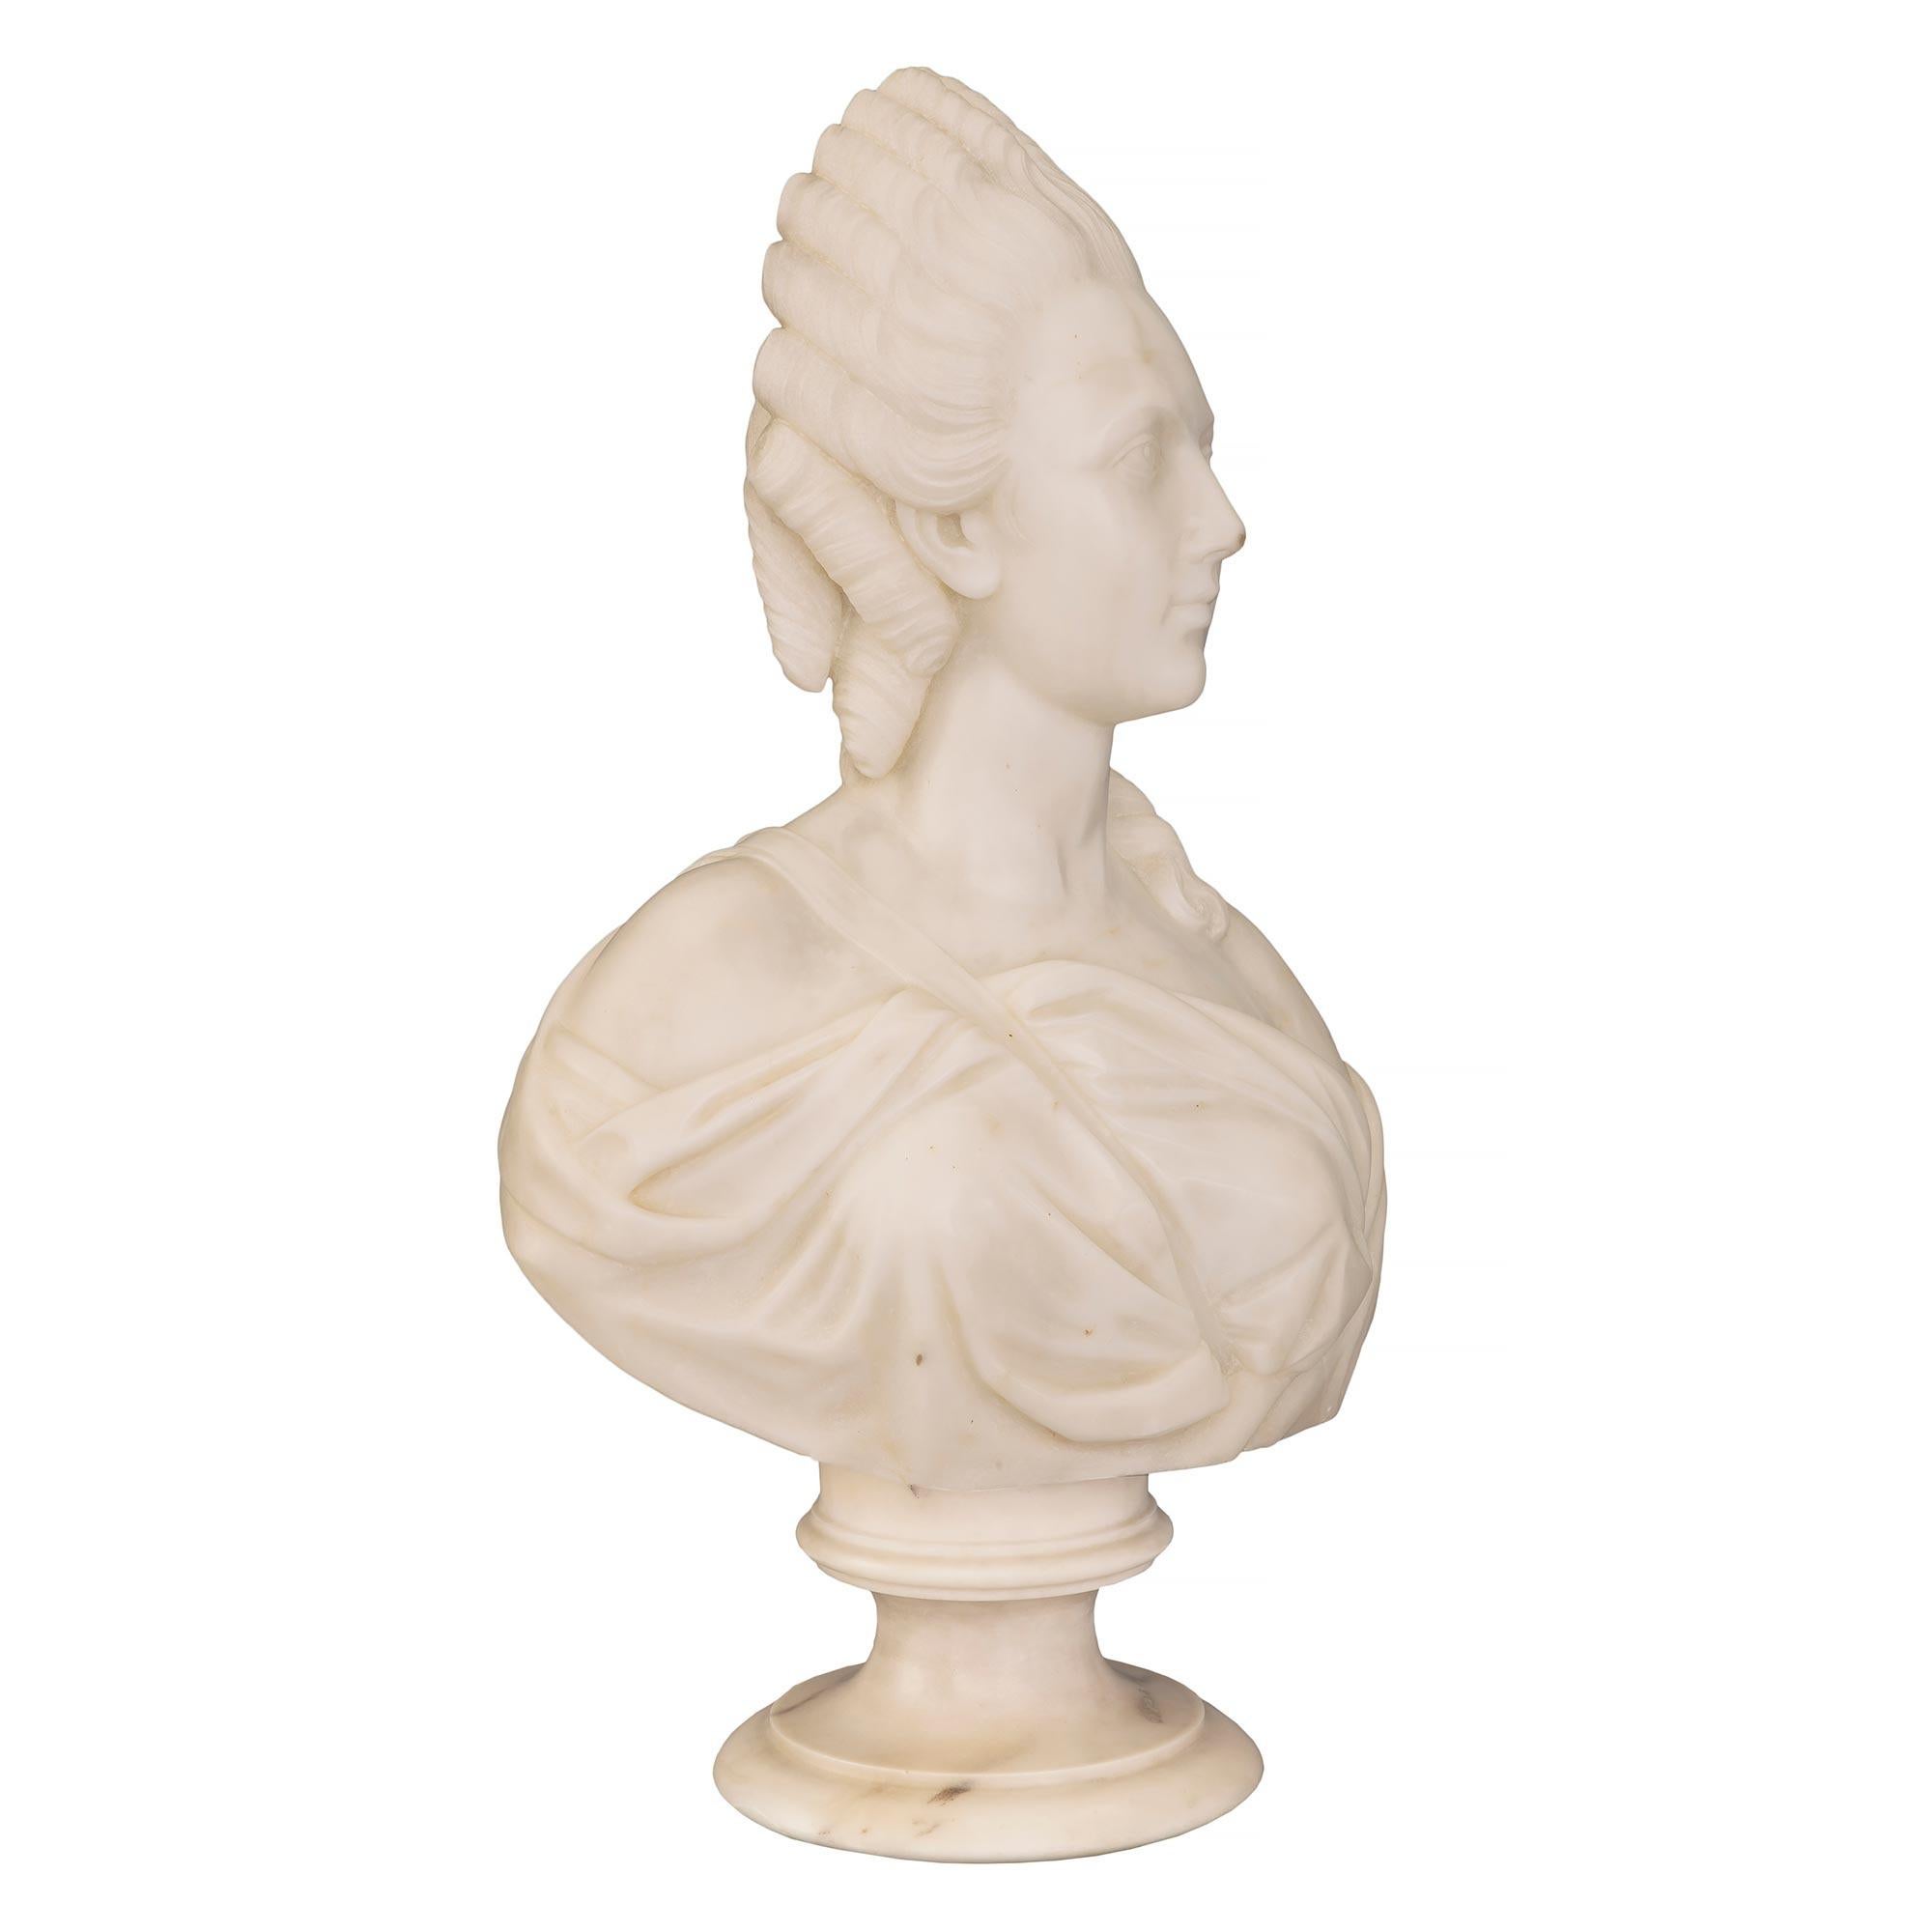 Un beau buste français du 19ème siècle en marbre blanc de Carrare représentant Marie-Antoinette. Le buste est surélevé par un socle circulaire finement moucheté. Le buste richement sculpté représente Marie-Antoinette drapée dans un élégant vêtement